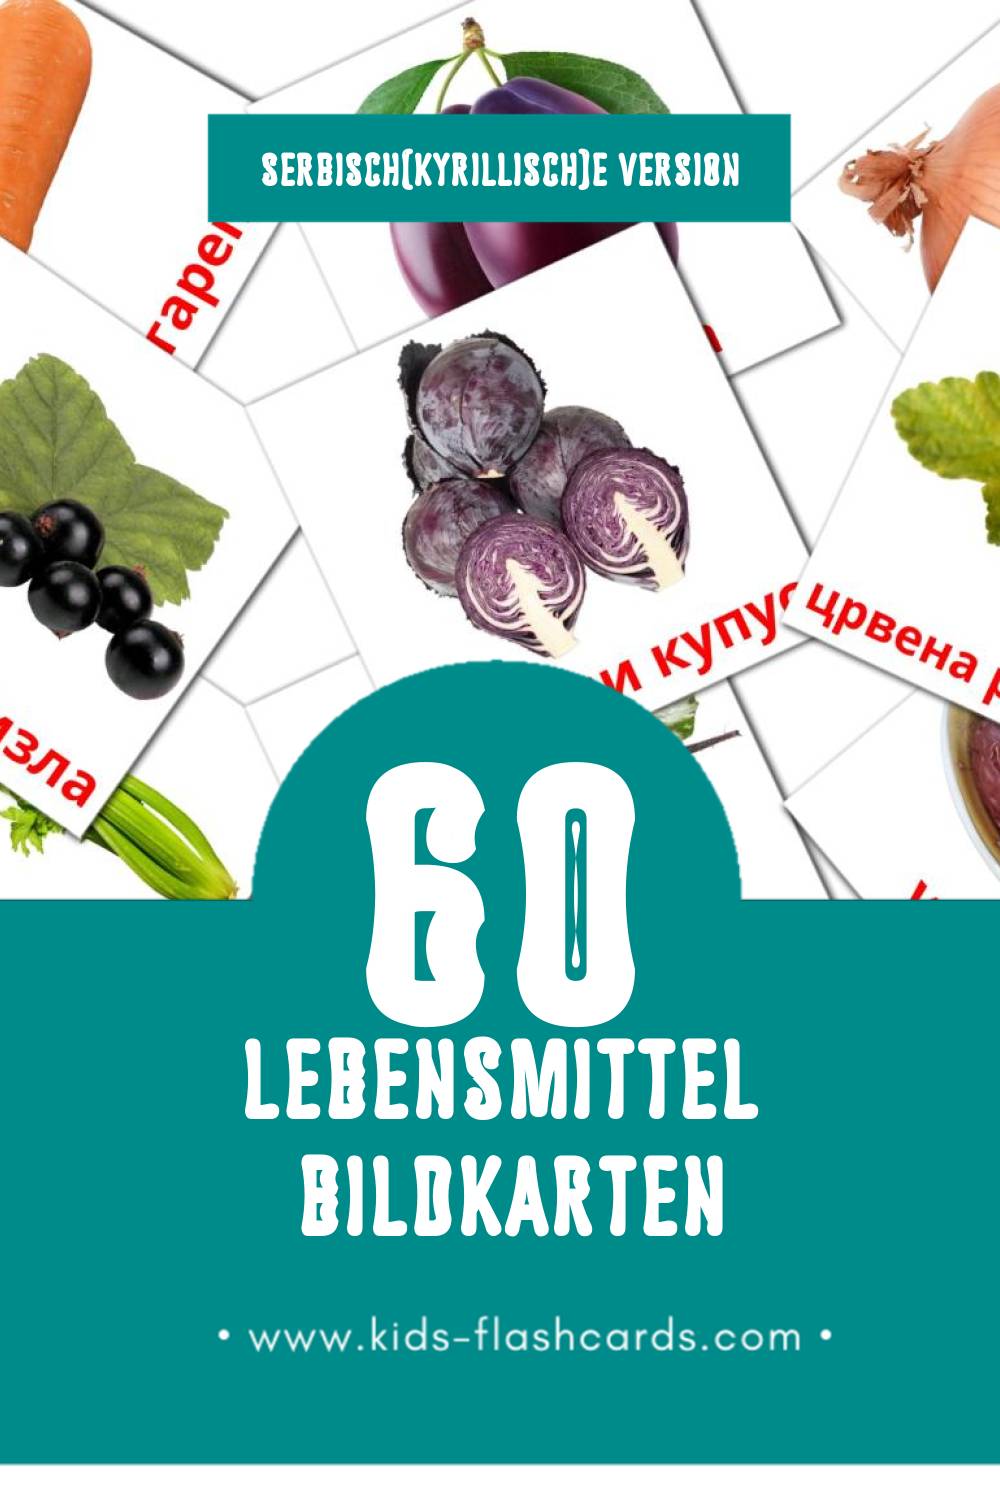 Visual Храна Flashcards für Kleinkinder (60 Karten in Serbisch(kyrillisch))